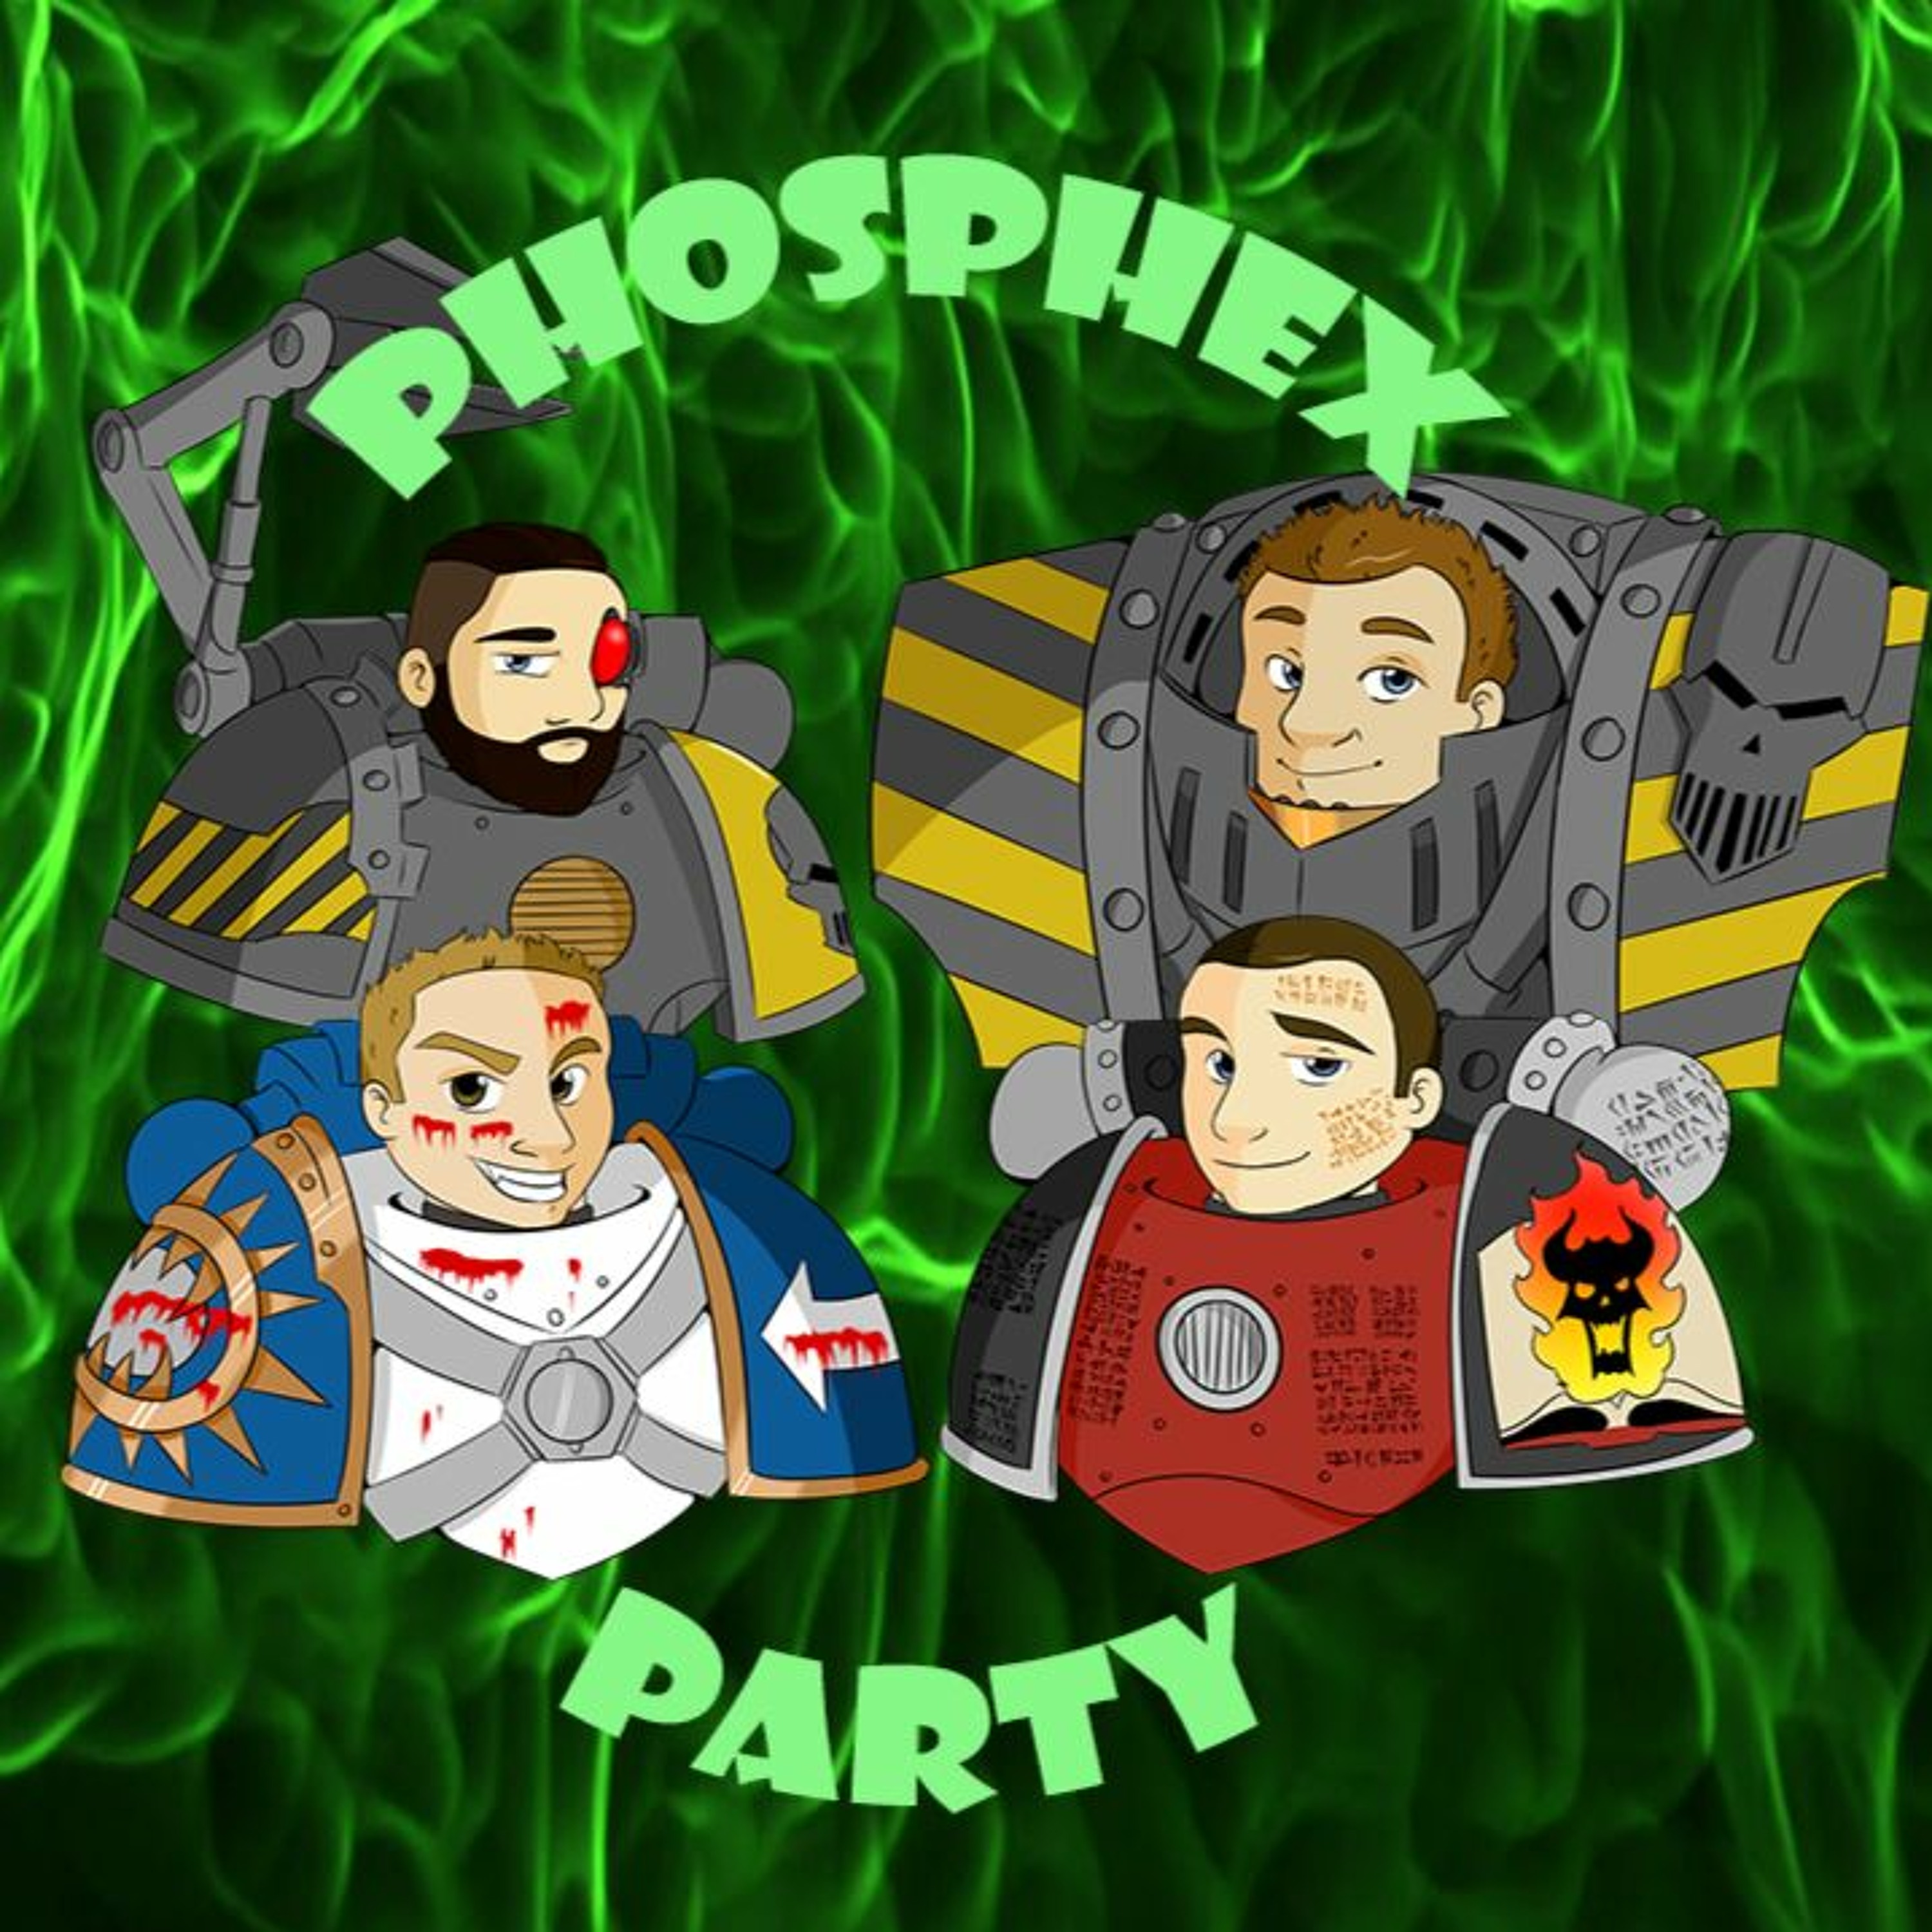 Phosphex Party Episode 11 - Magnificent Winston